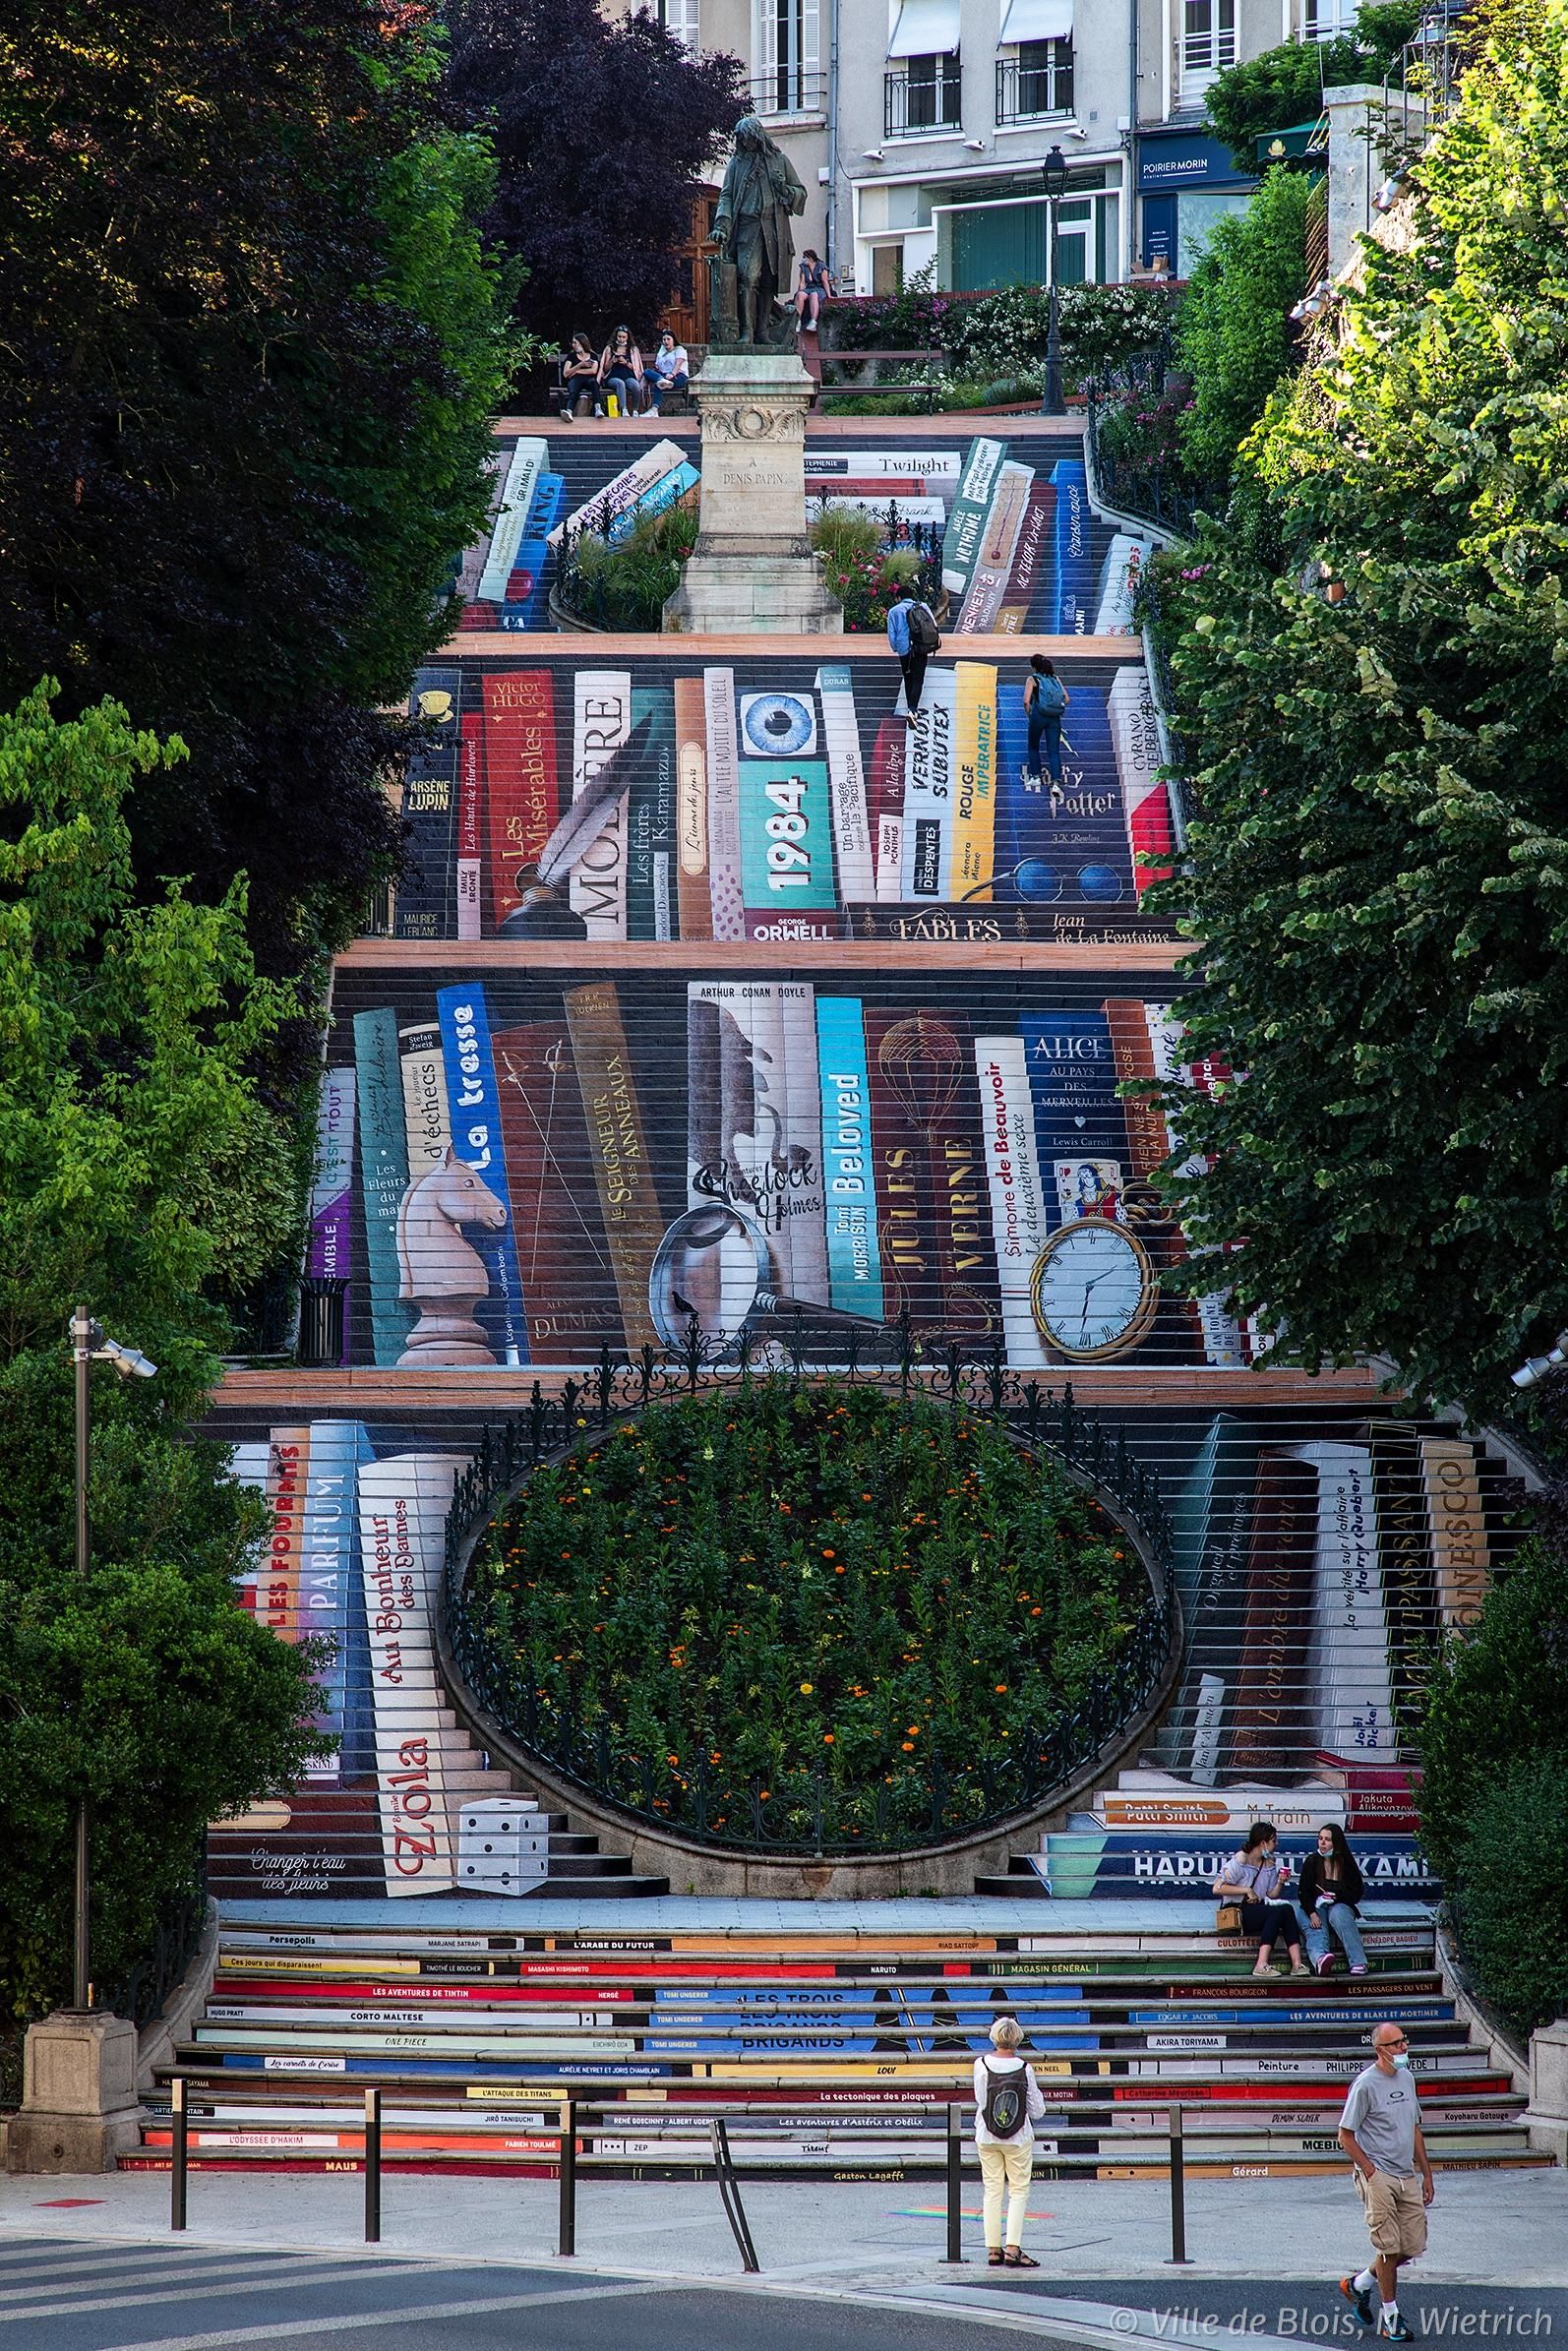 Blois fête les livres avec un parcours d’installations géantes à découvrir dans la rue